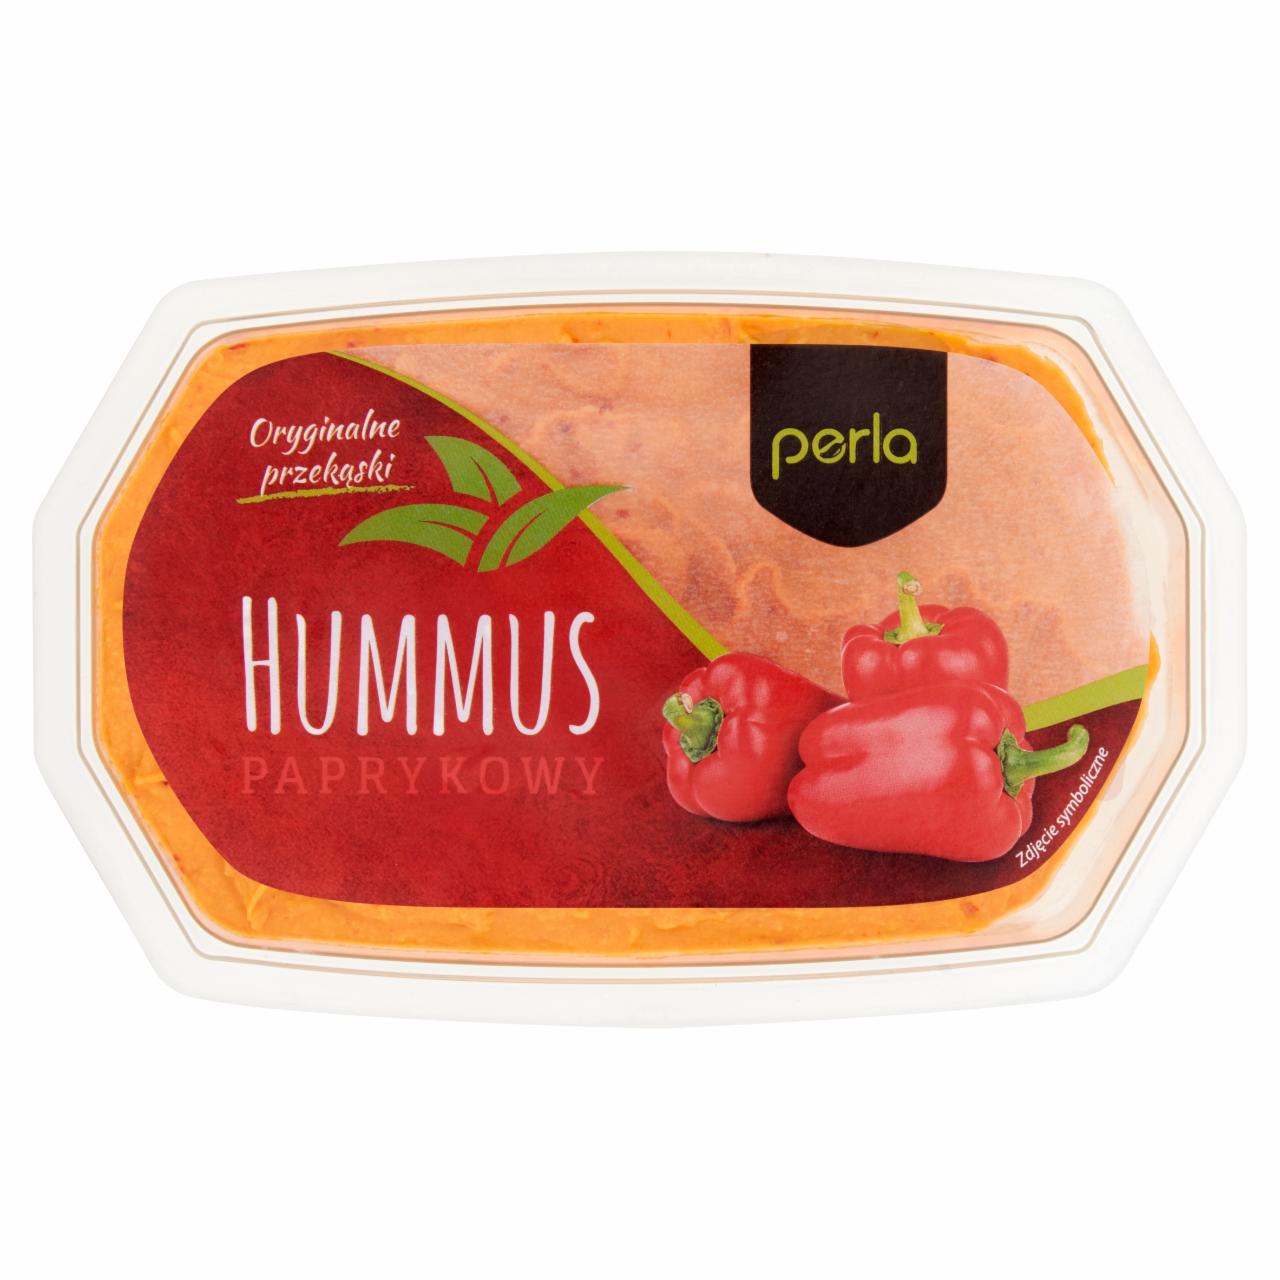 Zdjęcia - Perla Hummus paprykowy 180 g